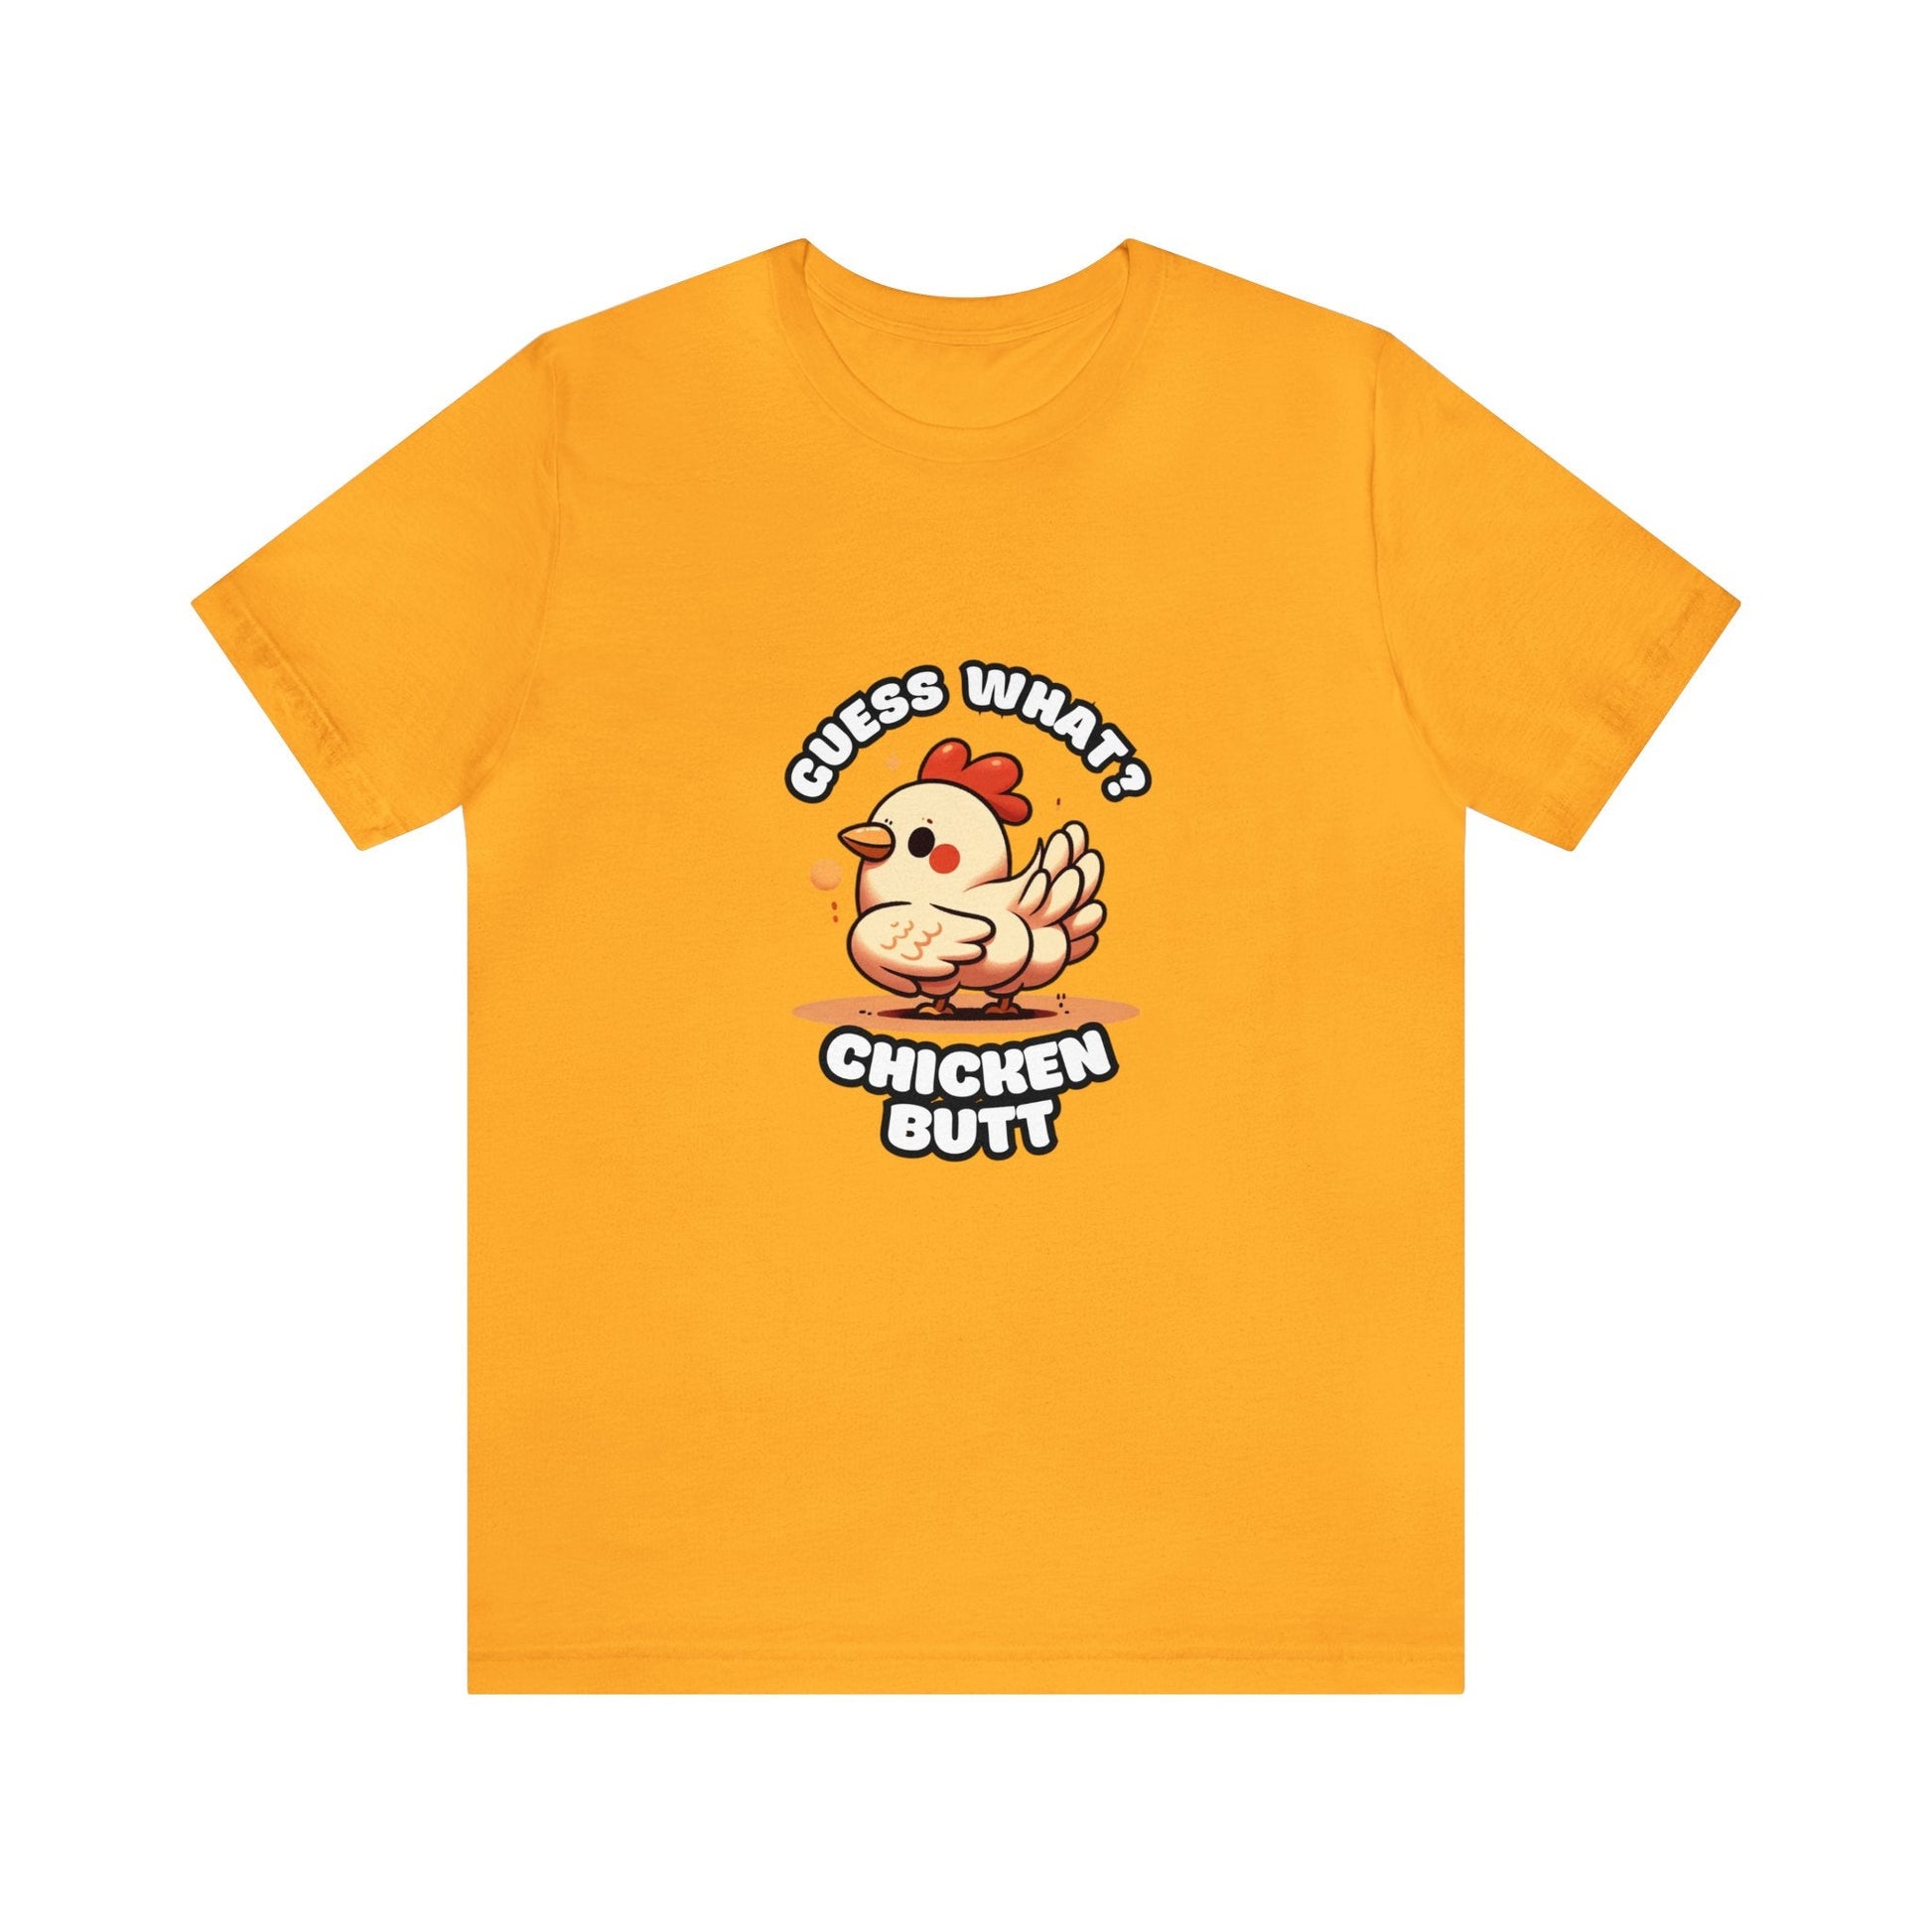 Guess What? Chicken Butt - Chicken T-shirt Yellow / XS